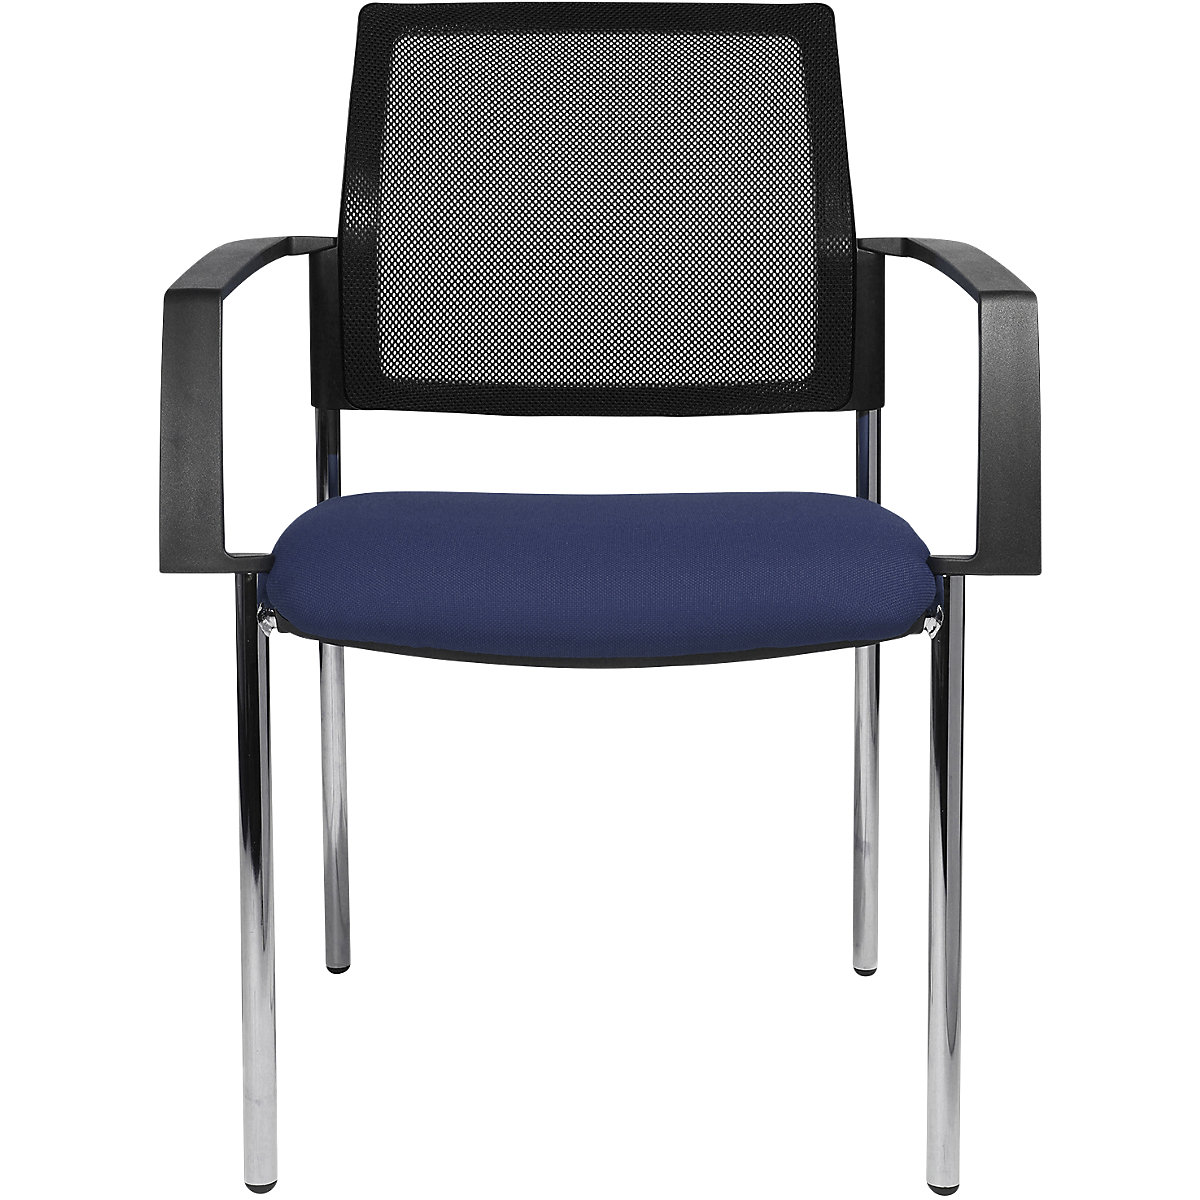 Složiva stolica s mrežastim naslonom – Topstar, 4 noge, pak. 2 kom., sjedalo u plavoj boji, kromirano postolje